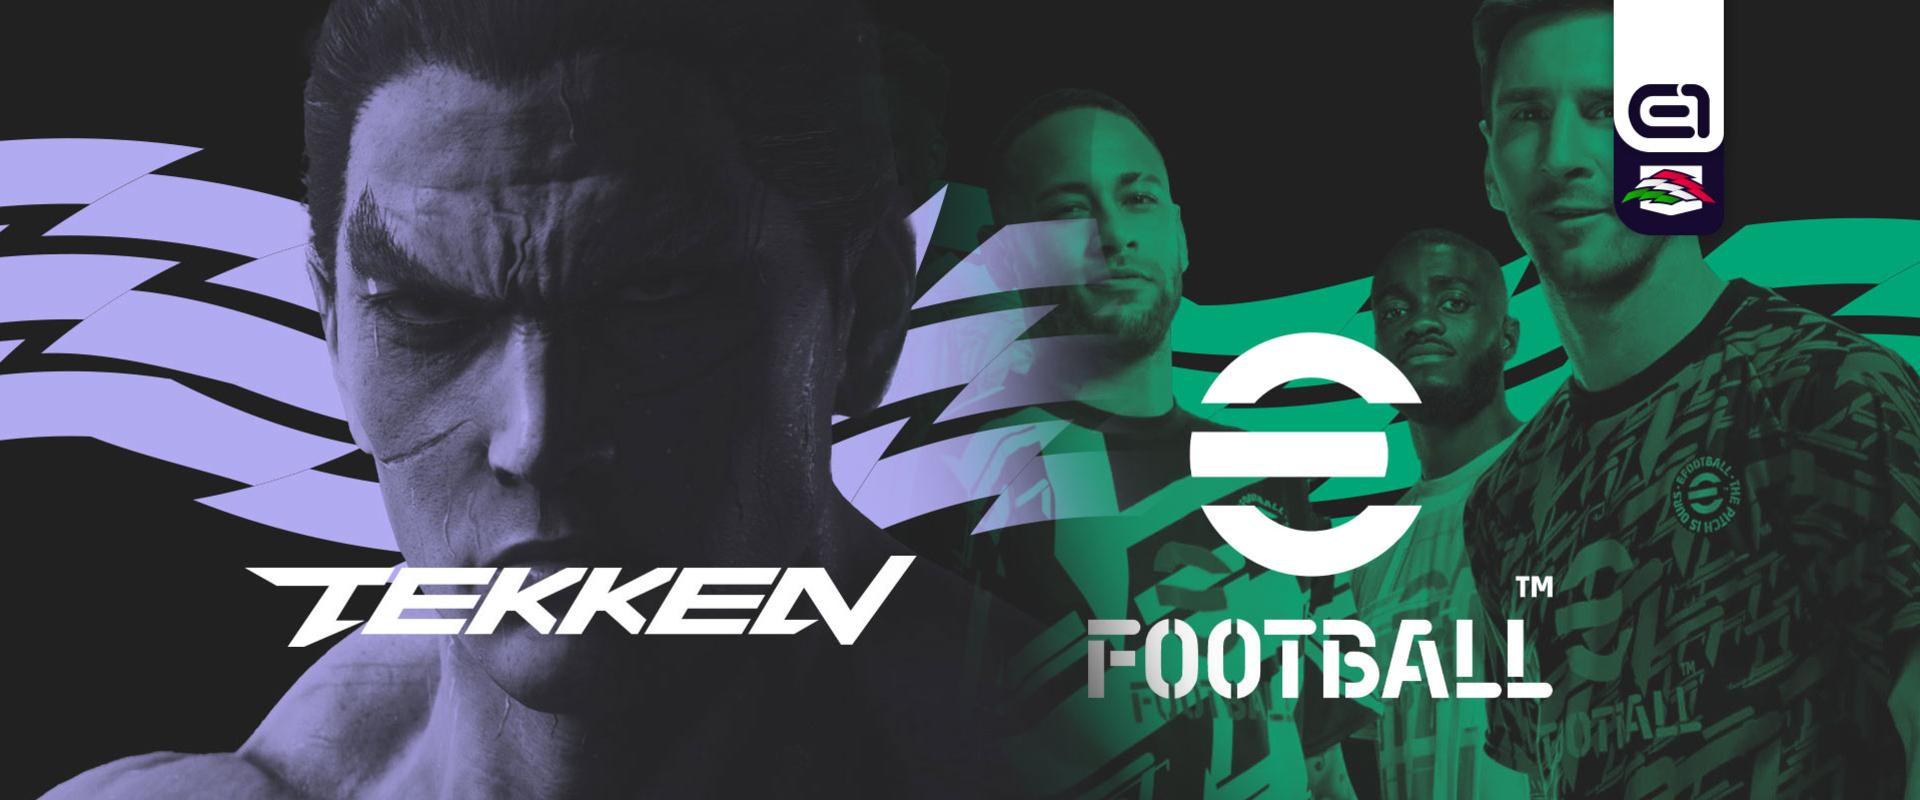 LAN-on játszhattok a Tekken 7 és eFootball 2023 válogatottságért!